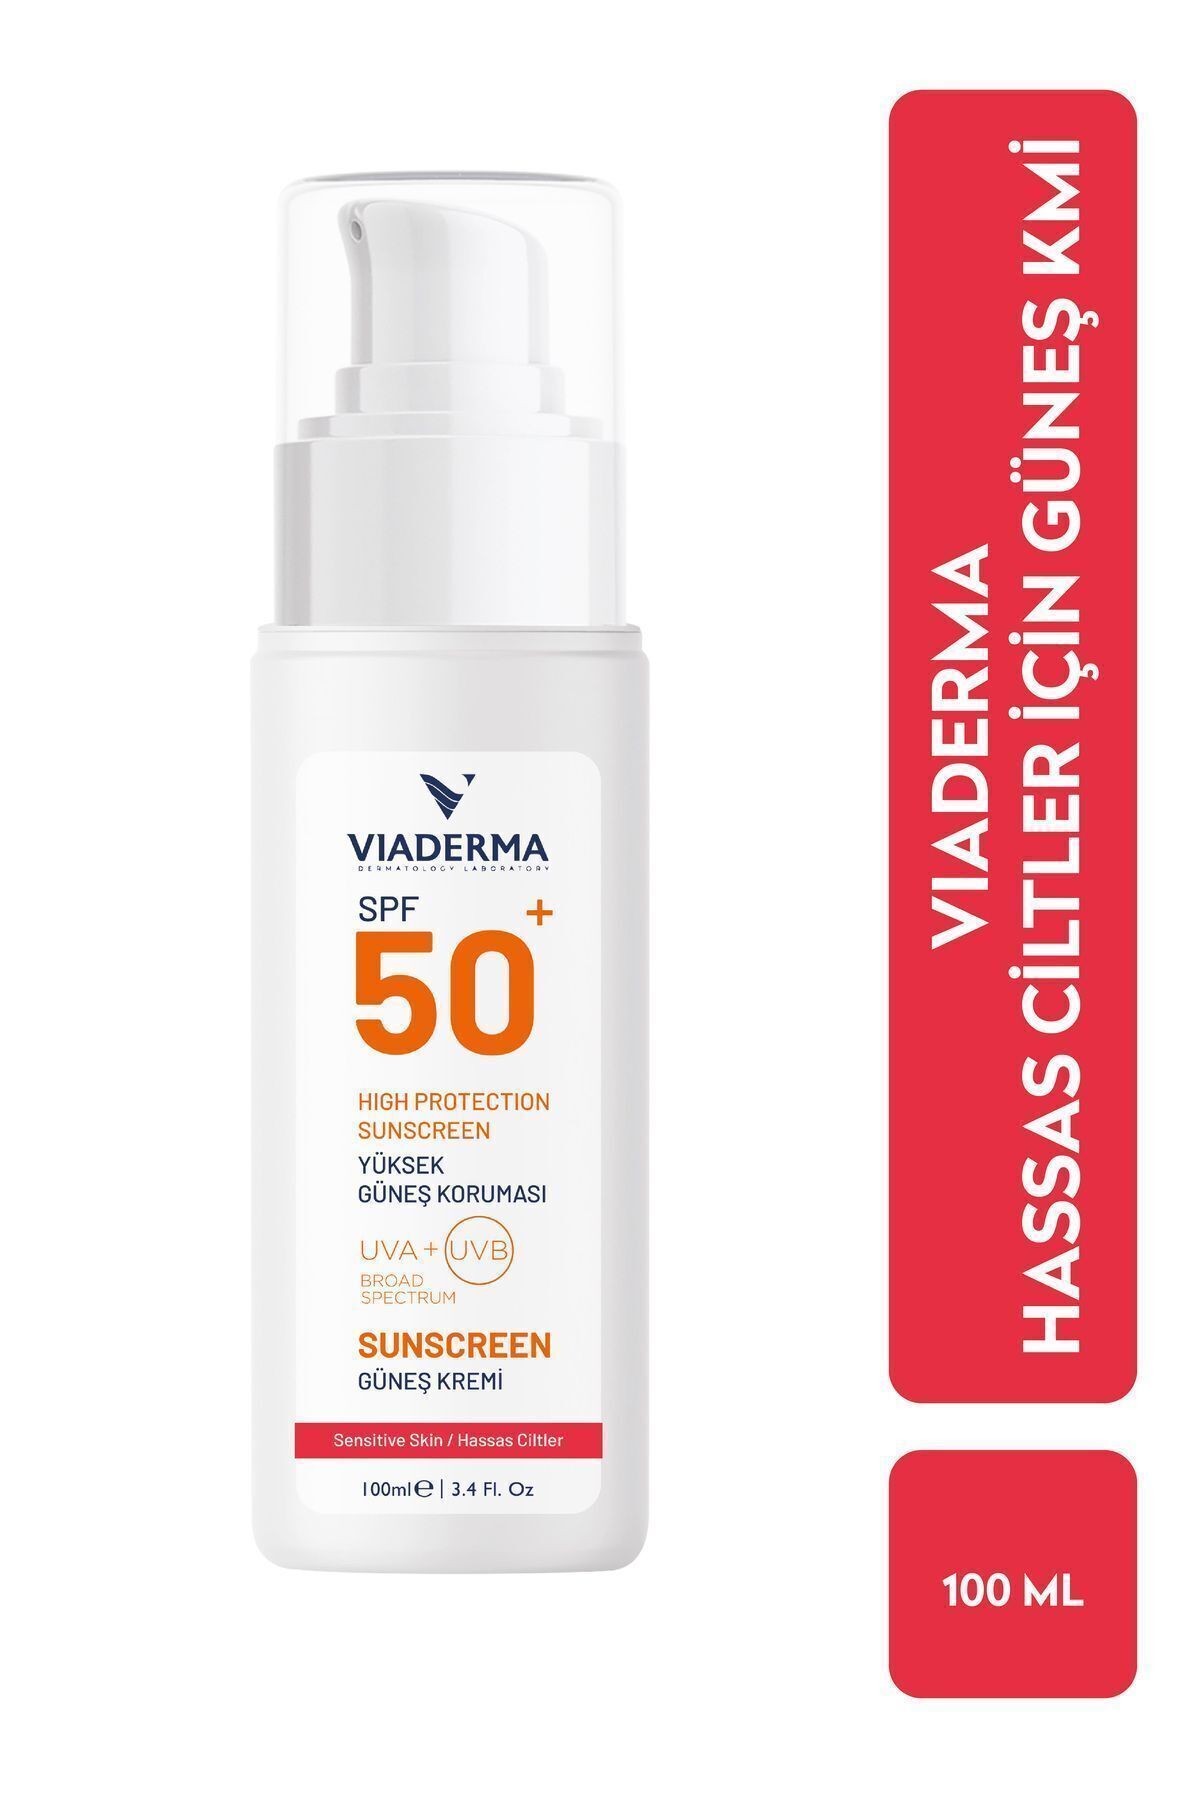 Viaderma SPF+50 Hassas Kuru & Kızarık Ciltler İçin Yüksek Korumalı Yüz & Vücut Güneş Kremi 100 ml